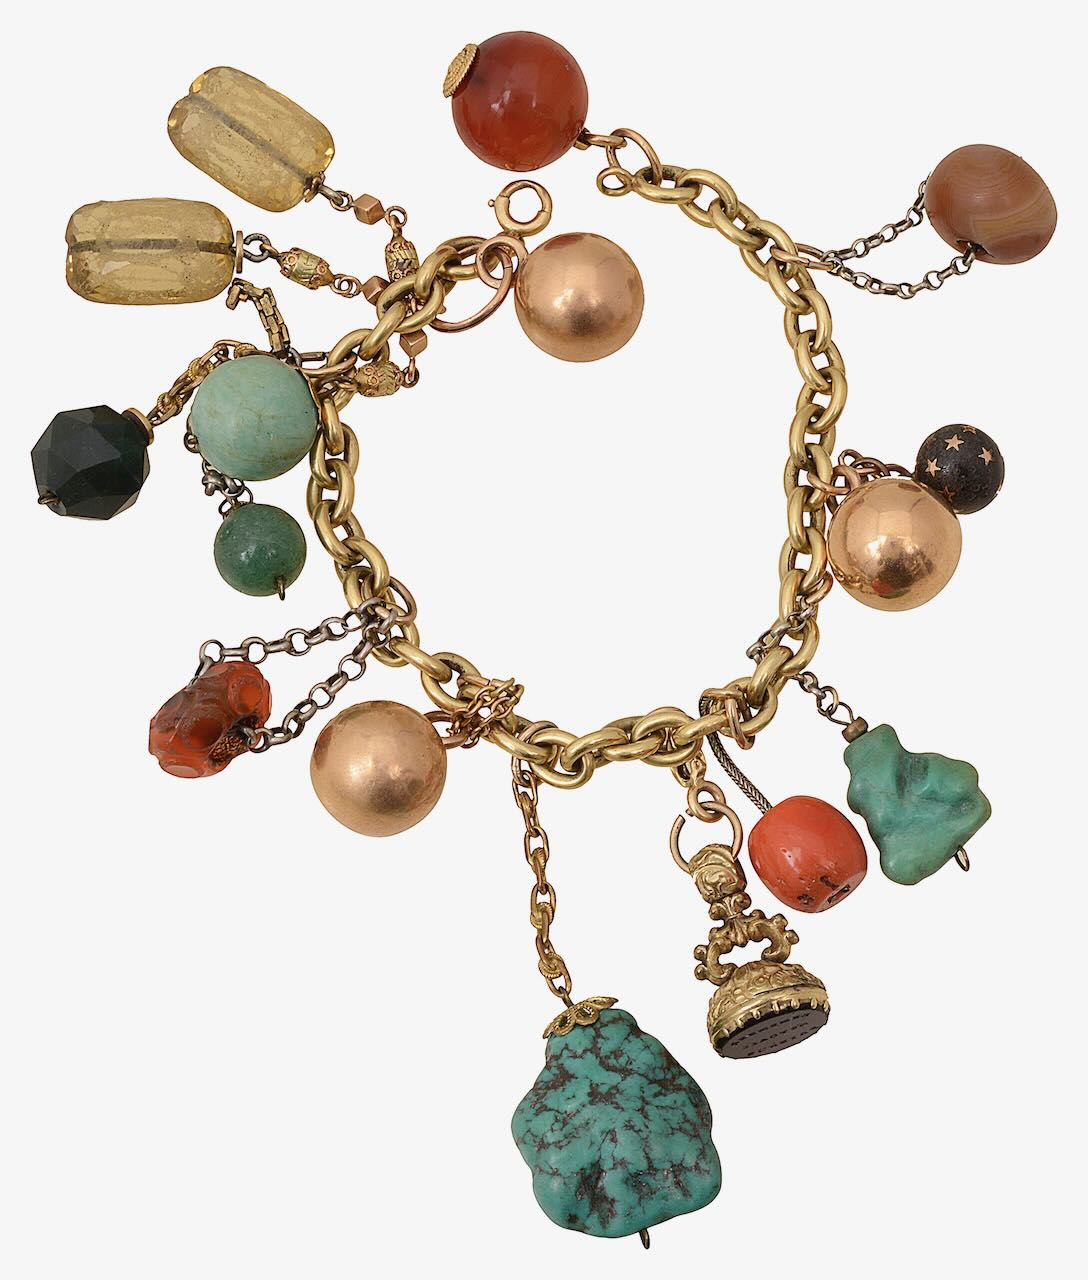 A gem and hardstone set charm bracelet